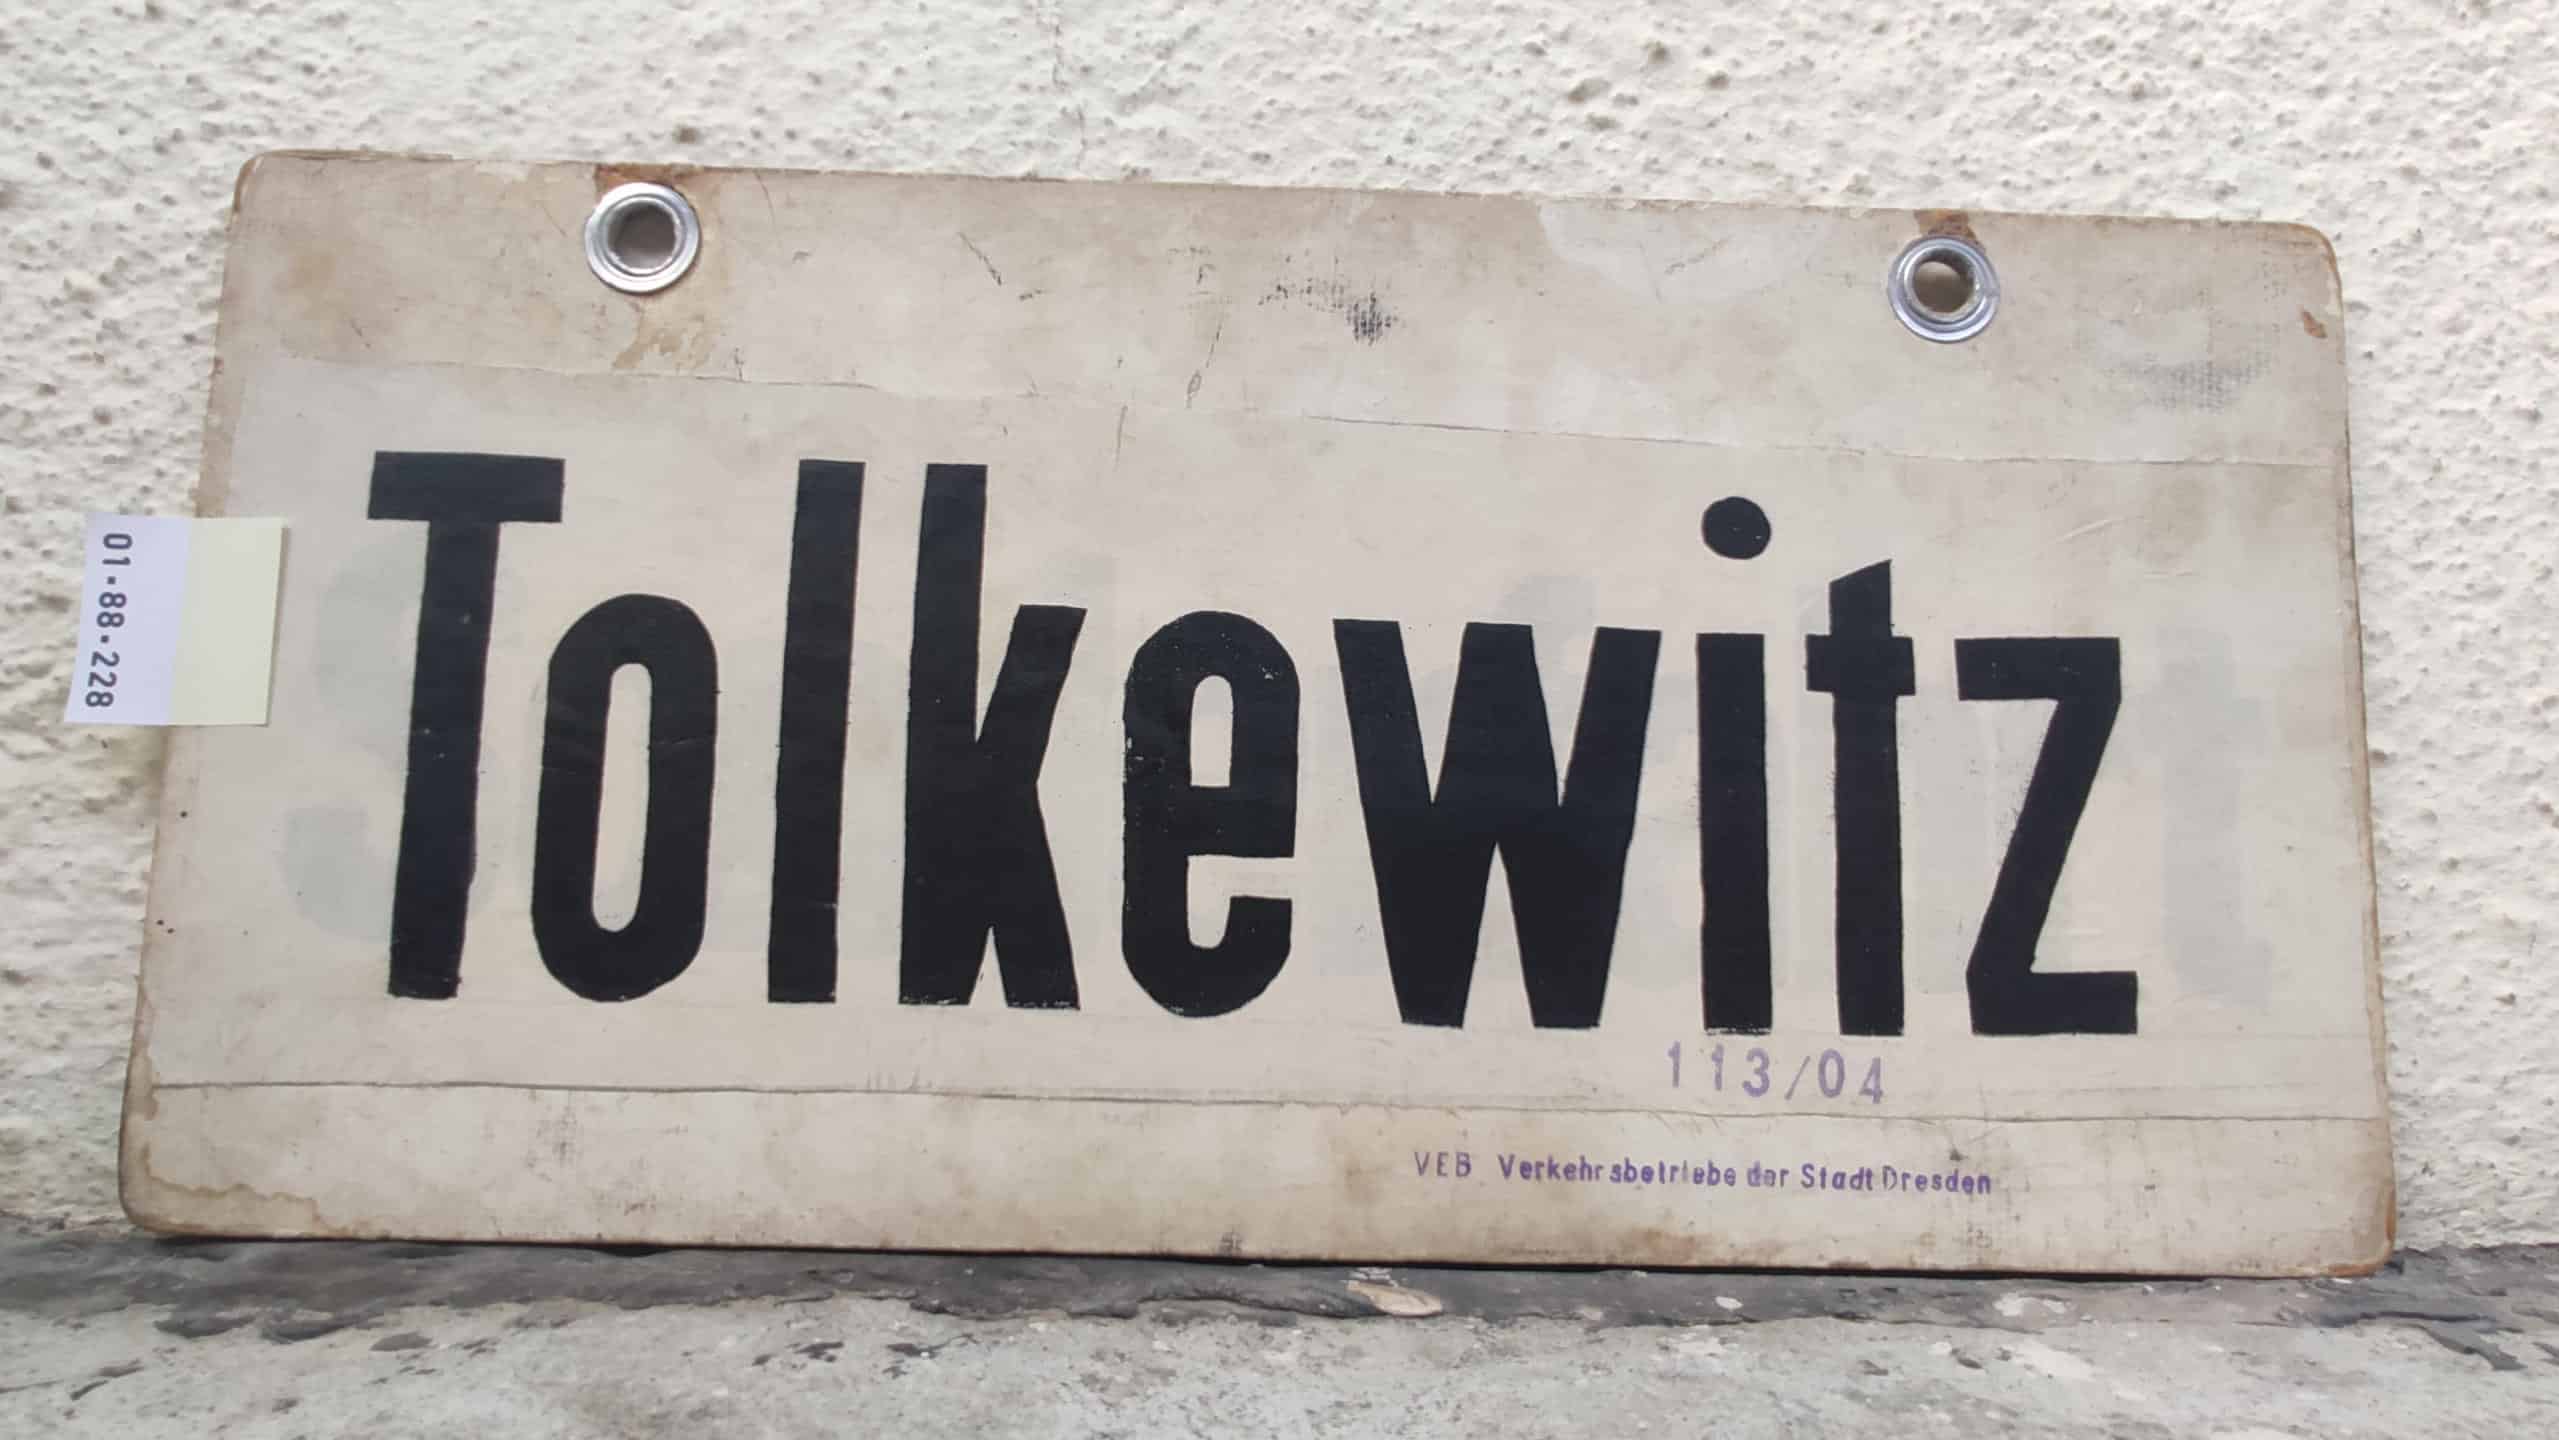 Tolkewitz